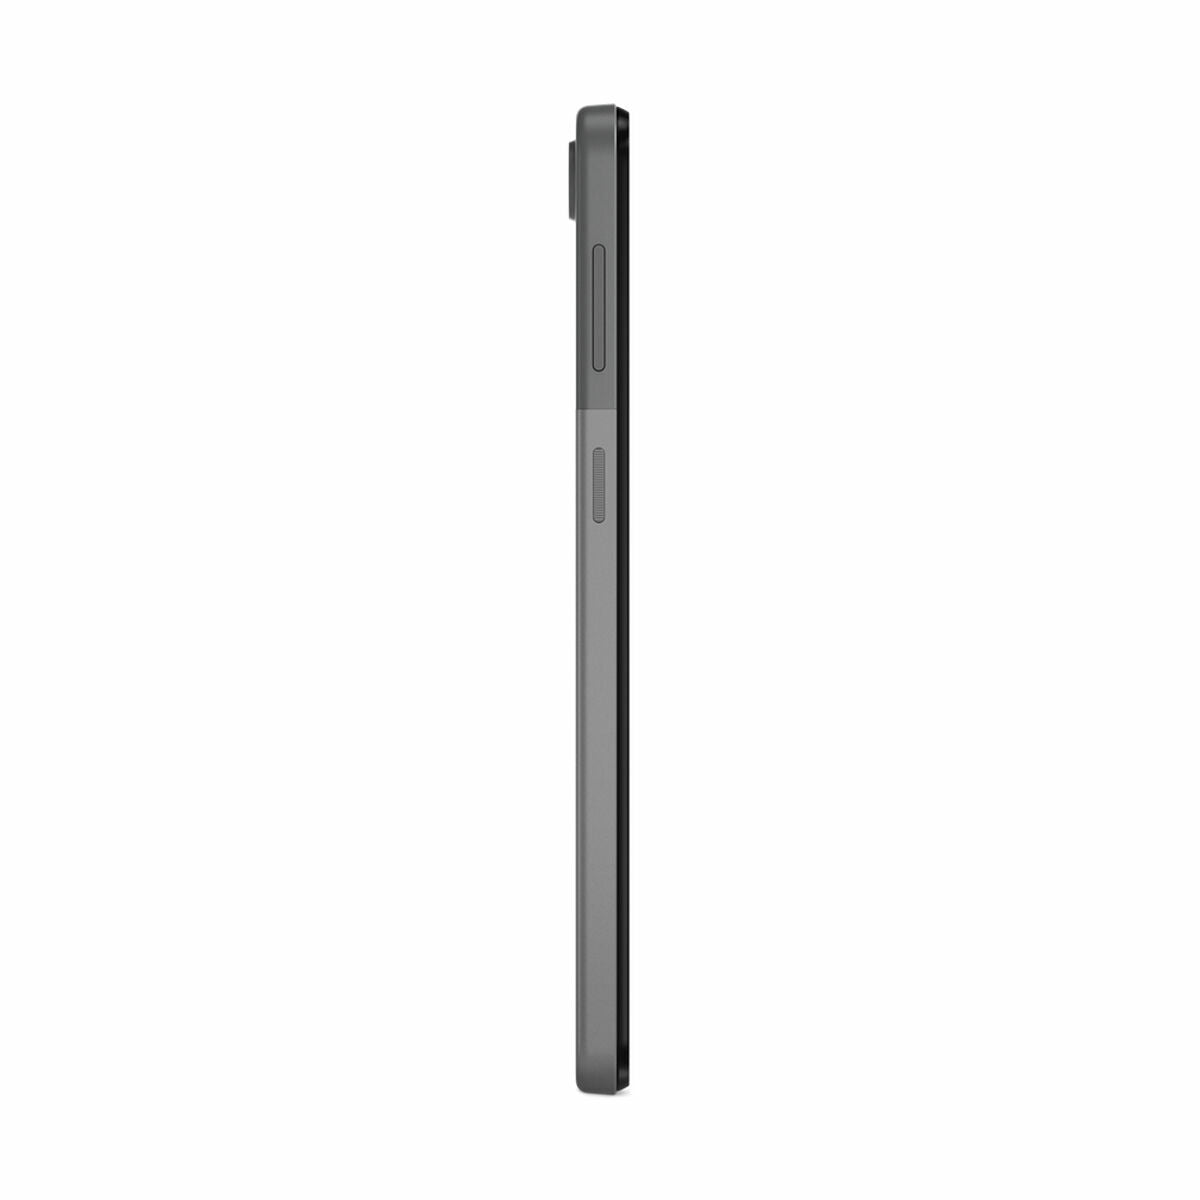 Tablet Lenovo M10 (3rd Gen) Unisoc 4 GB RAM 64 GB Grigio Multicolore